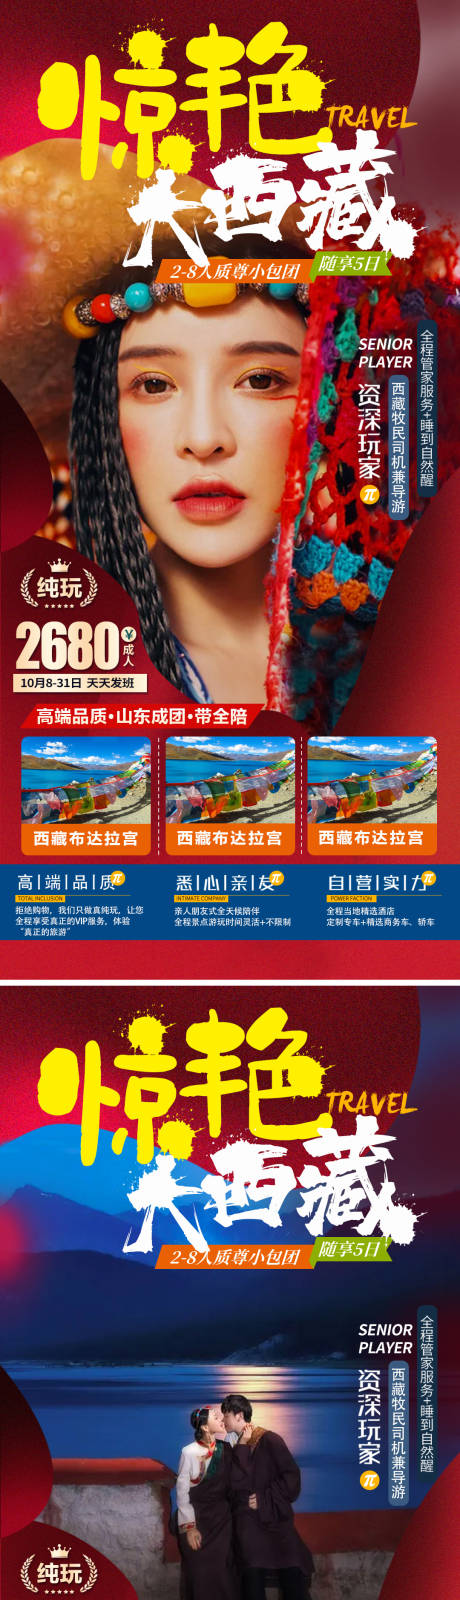 西藏旅游系列海报